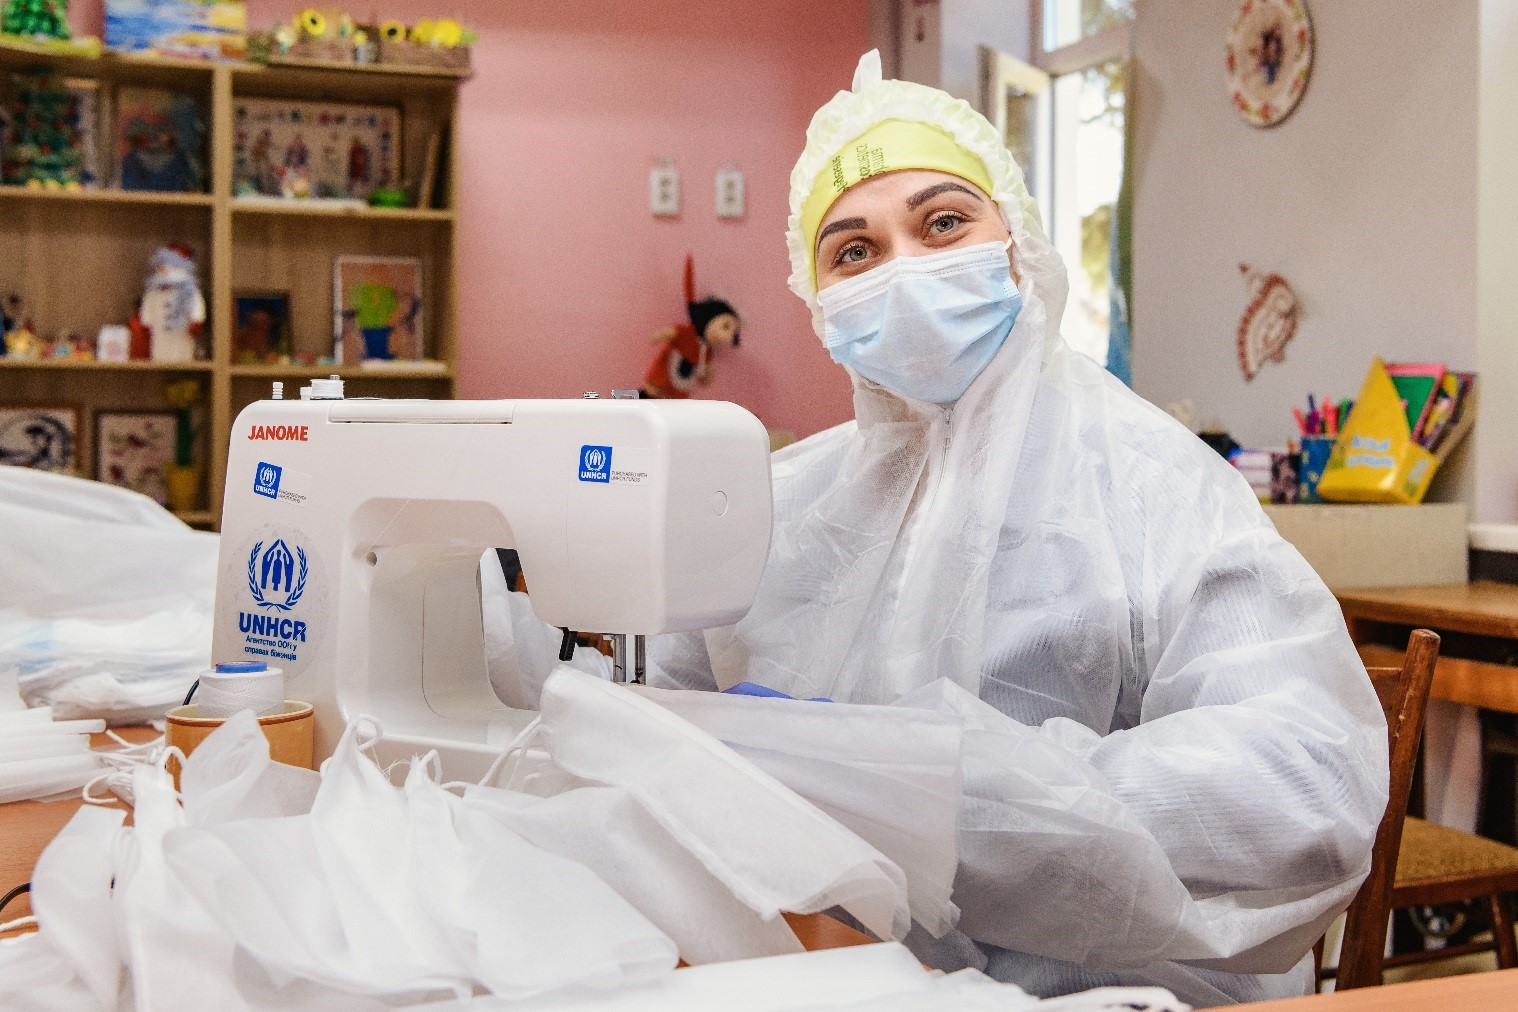 Una mujer con equipo de prptección fabrica mascarillas contra el COVID-19 con su máquina de coser 